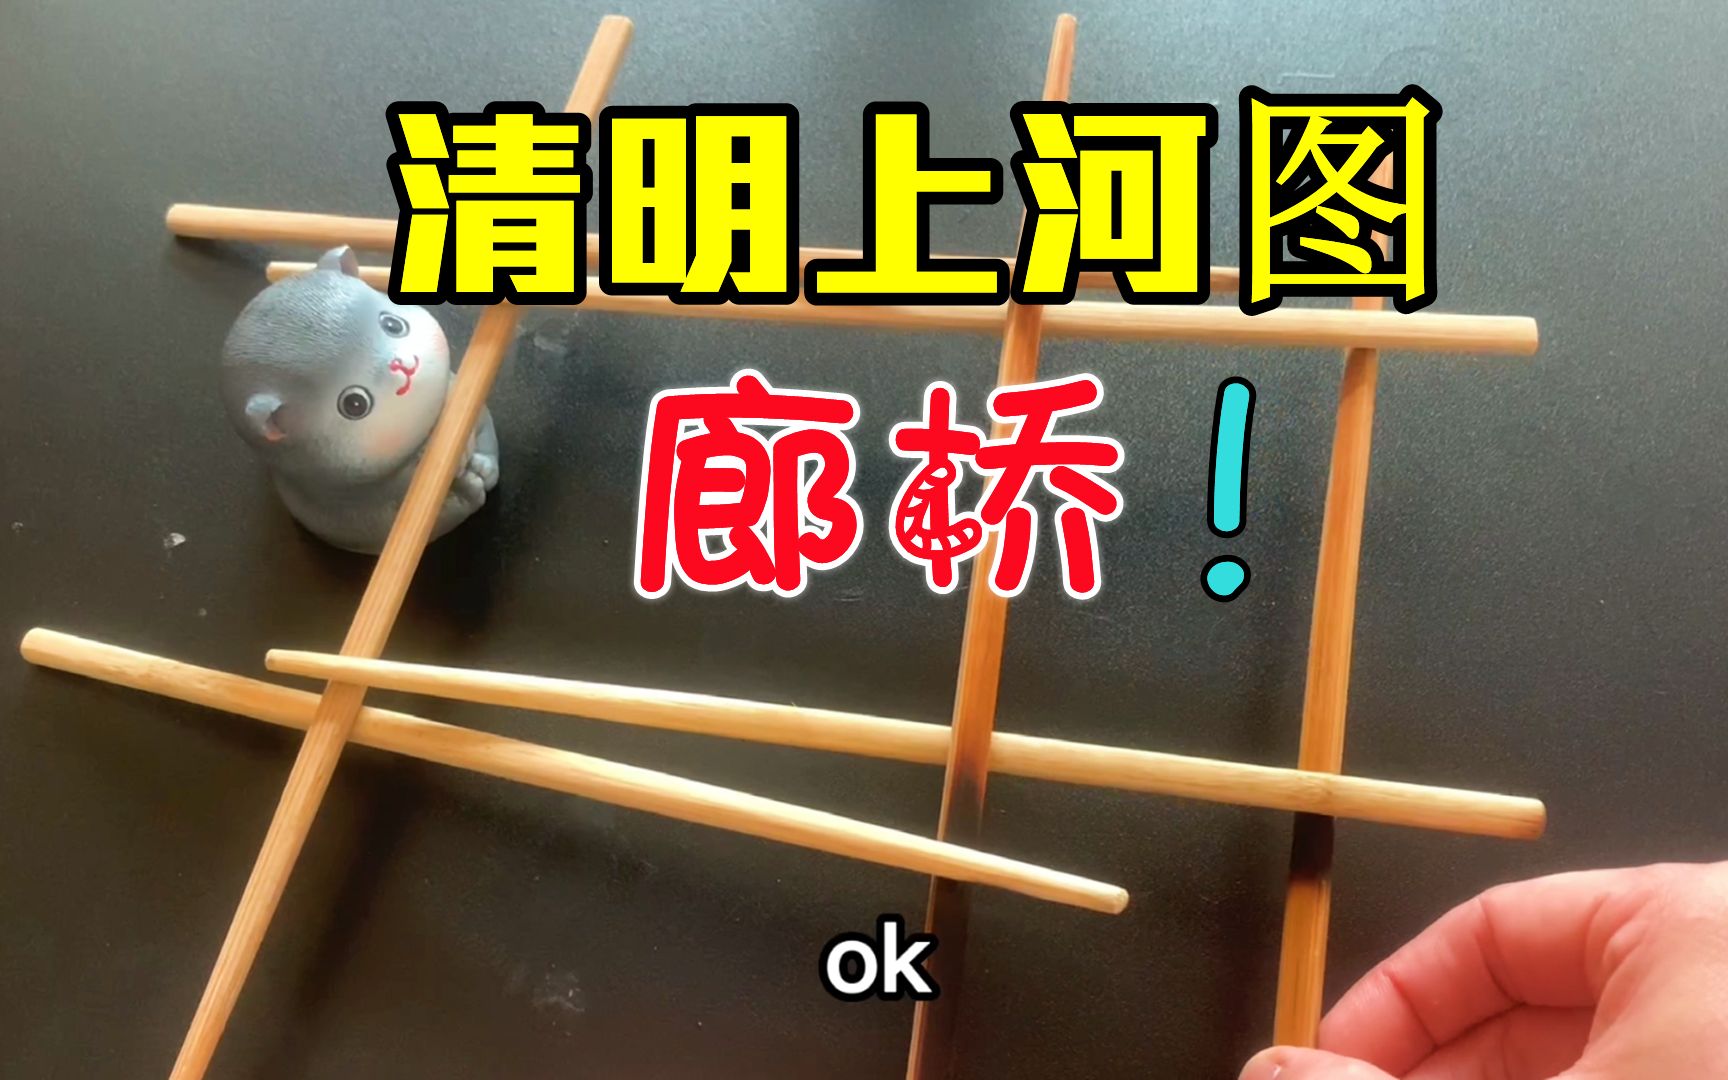 用9根筷子,就能搭一座清明上河图的廊桥?古人智慧确实佩服!